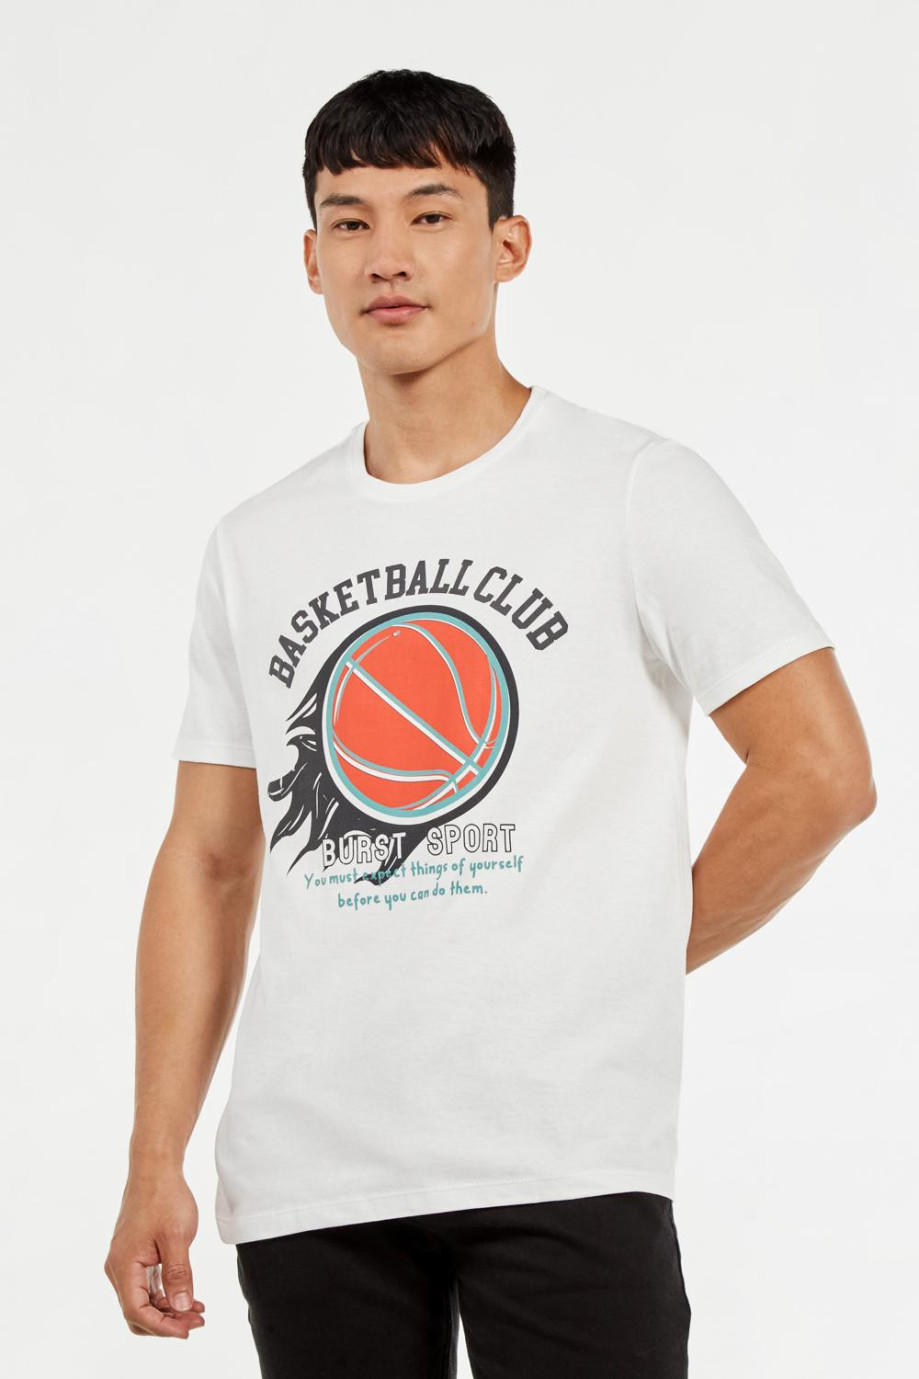 Camiseta crema clara con manga corta y estampado college de baloncesto